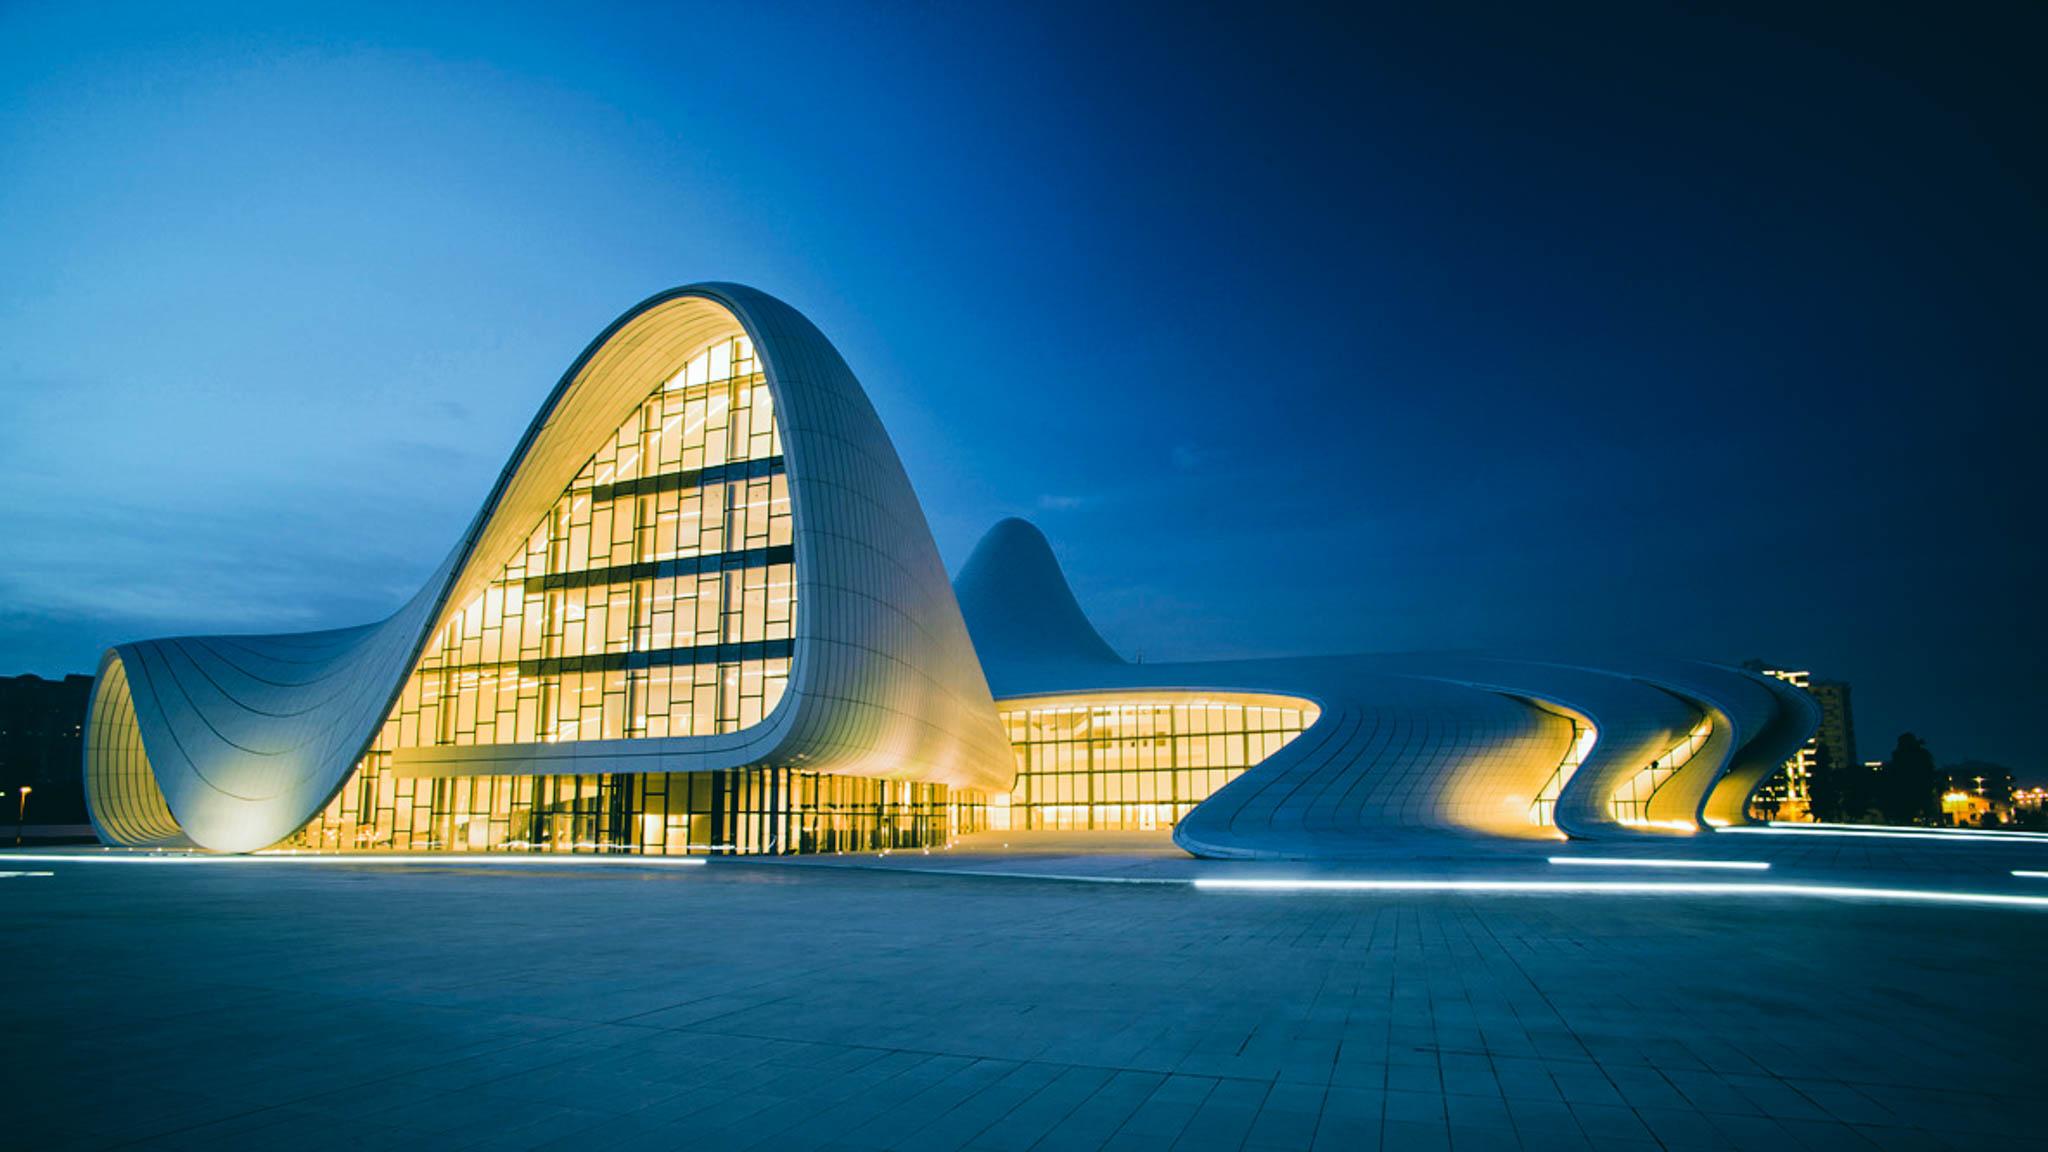 Heydar Aliyev Cultural Centre